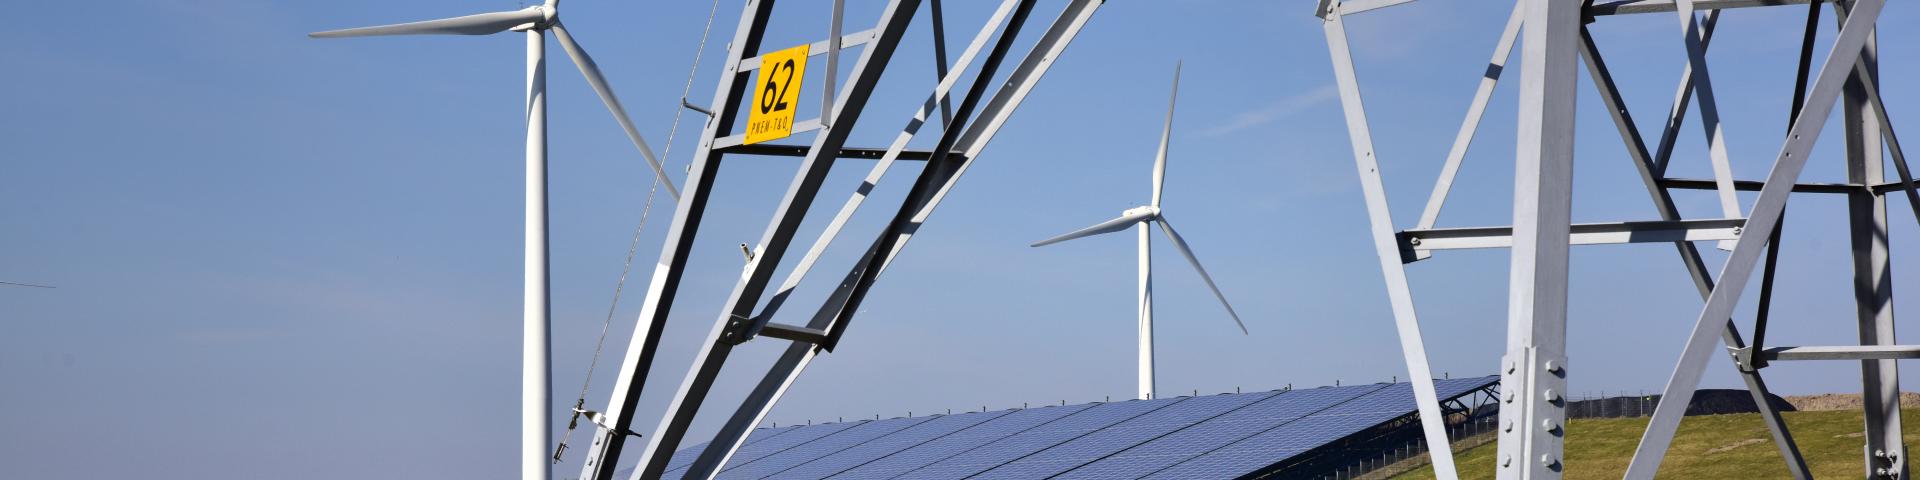 Foto van windmolens, zonnepanelen en een elektriciteitsmast